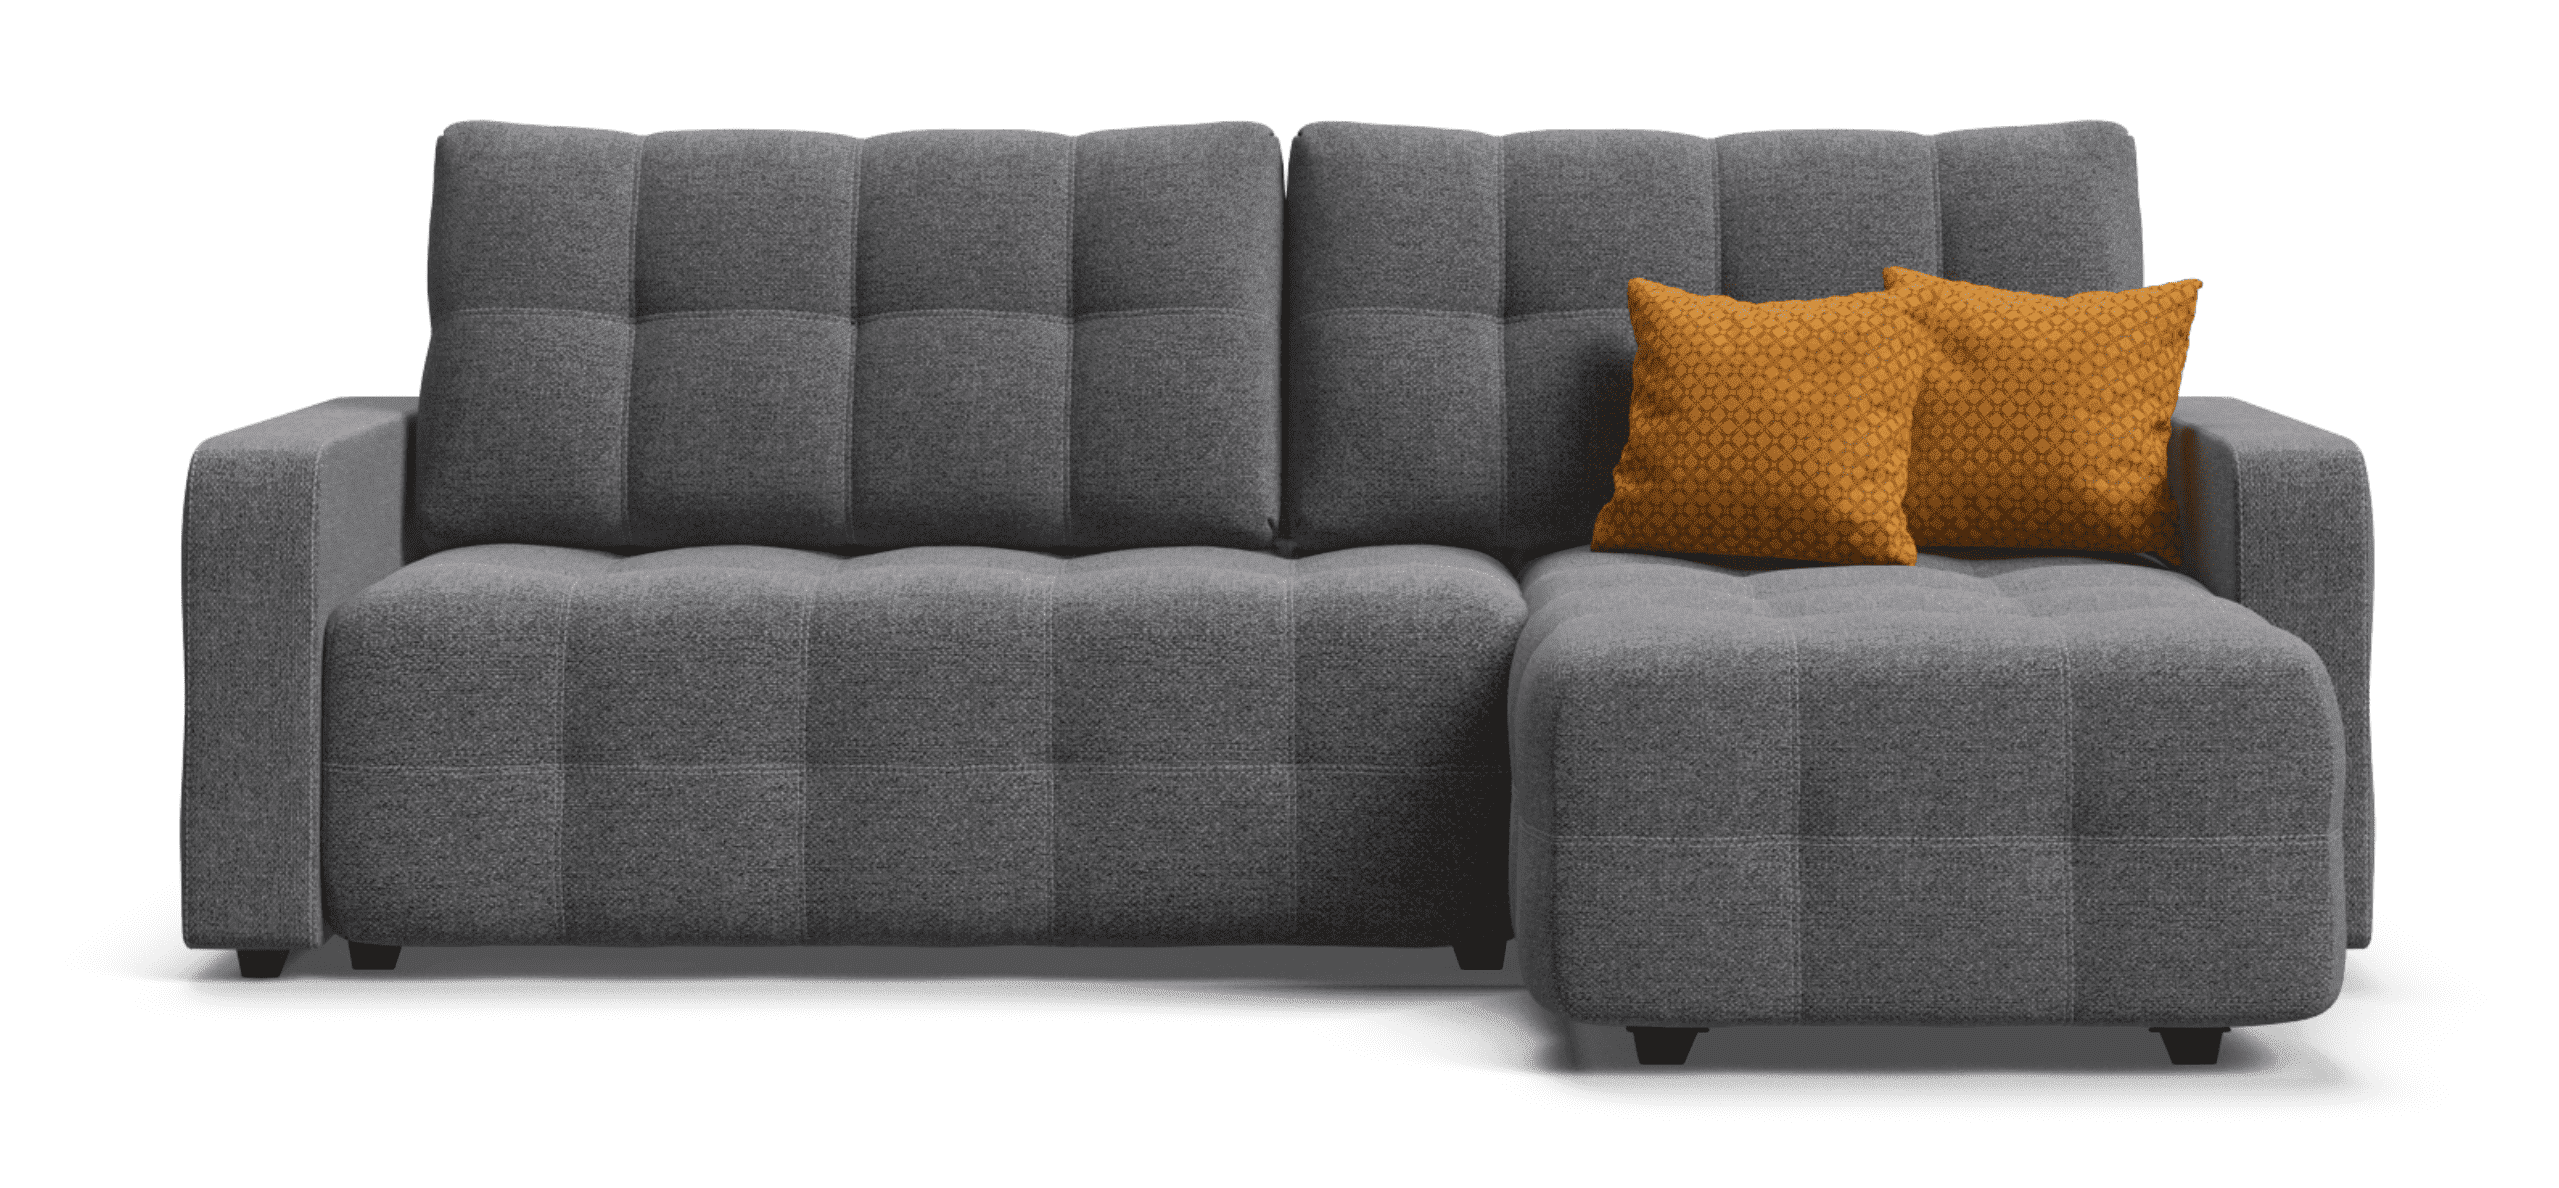 Угловой диван-кровать Много Мебели Dandy Euro SE с ящиком для хранения, еврокнижка, рогожка Malmo серый, 235х165х93 см